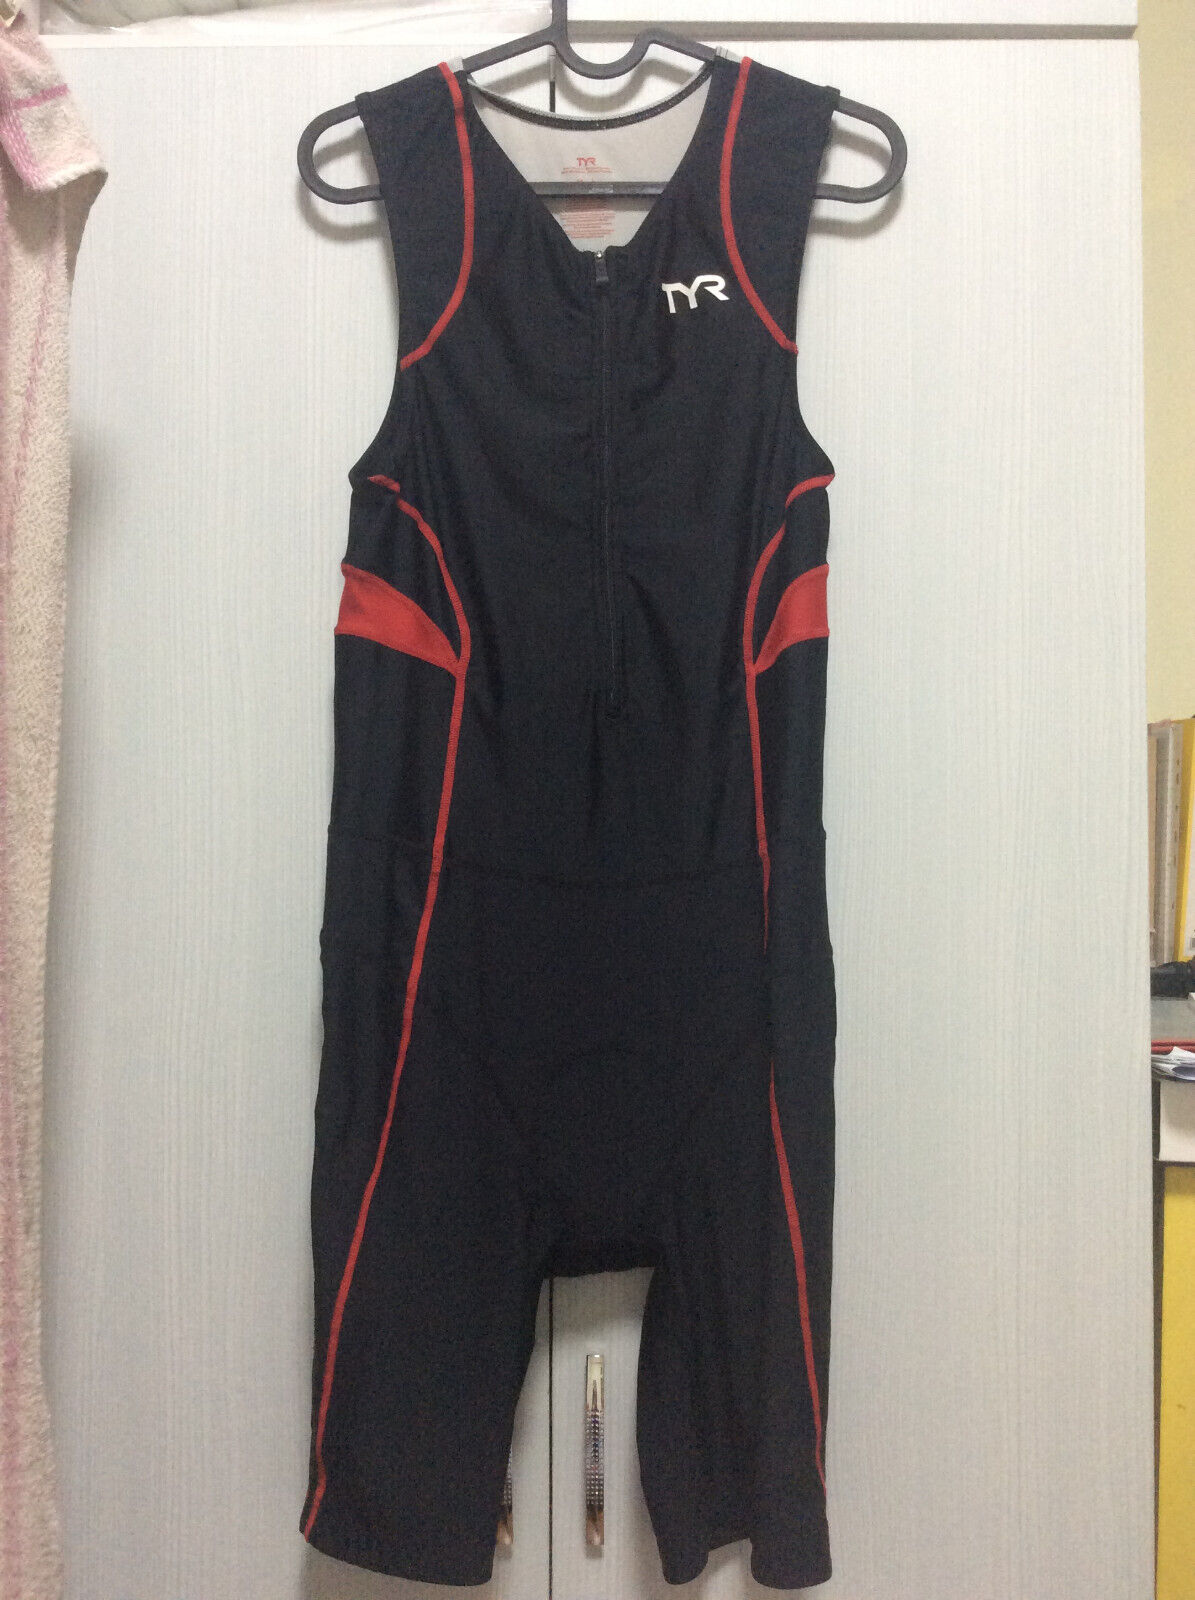 Tyr Men's Triathlon Trisuit - Size L